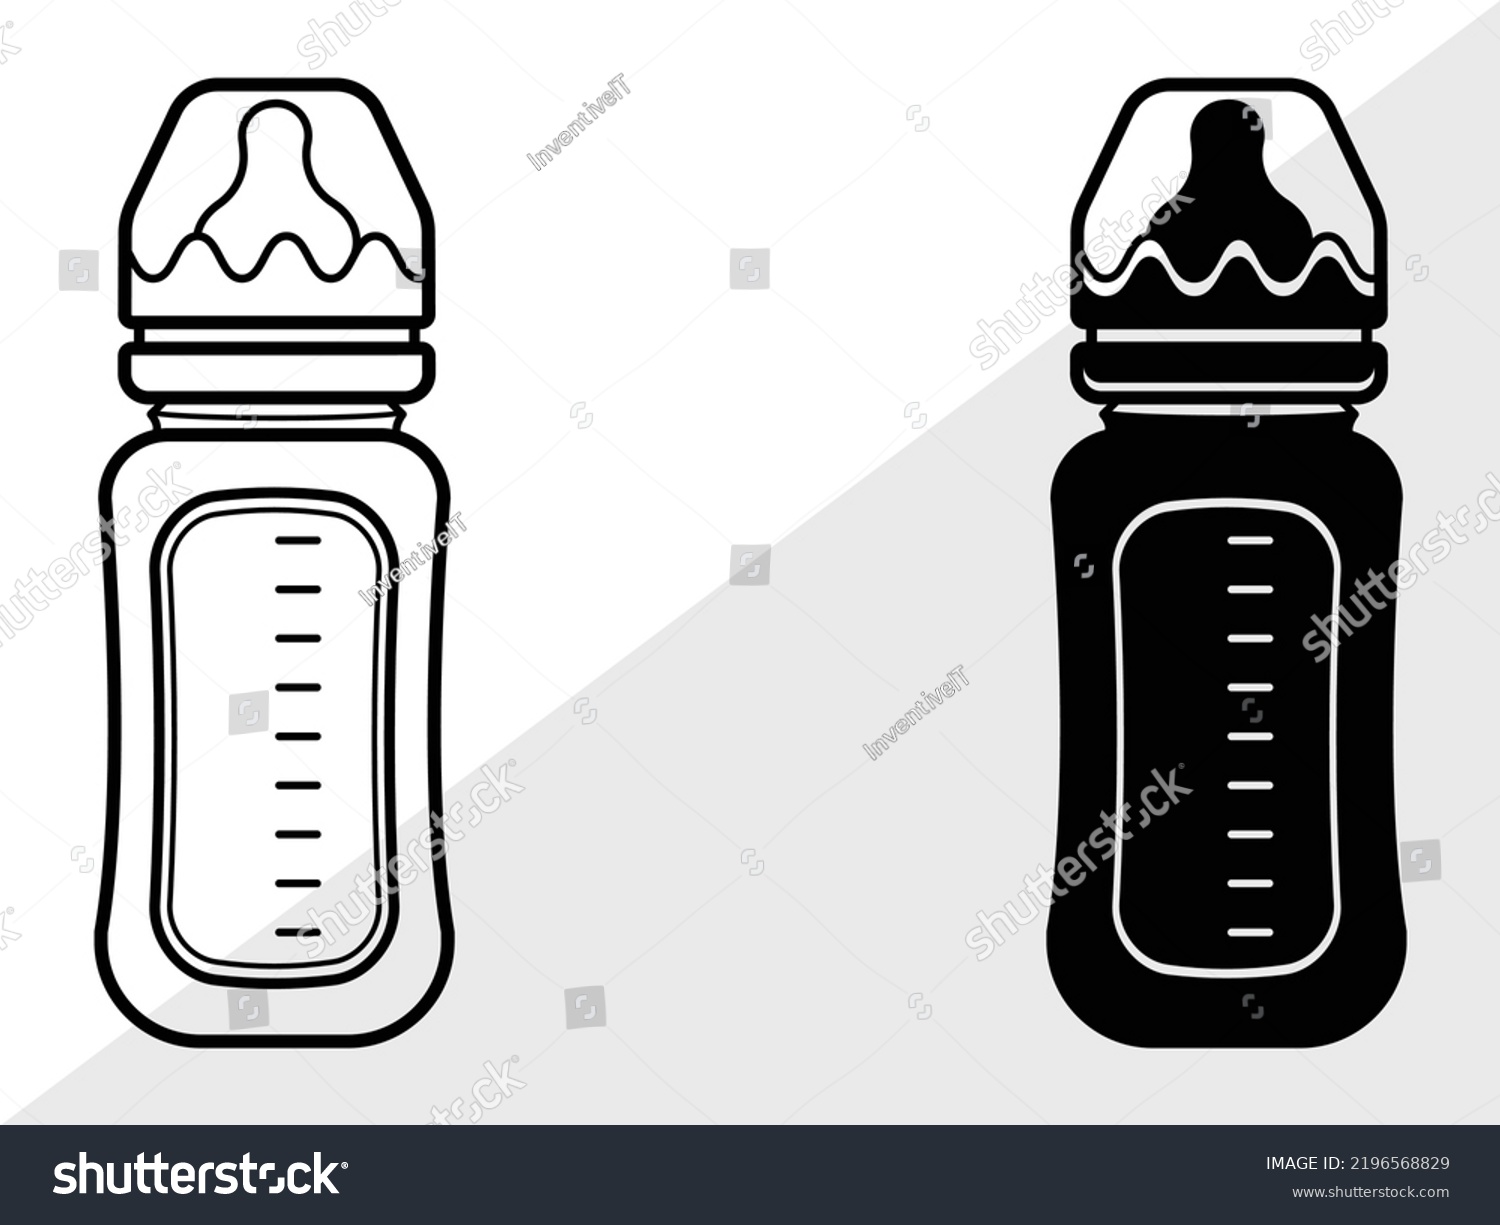 SVG of Baby Bottle SVG Printable Vector Illustration svg